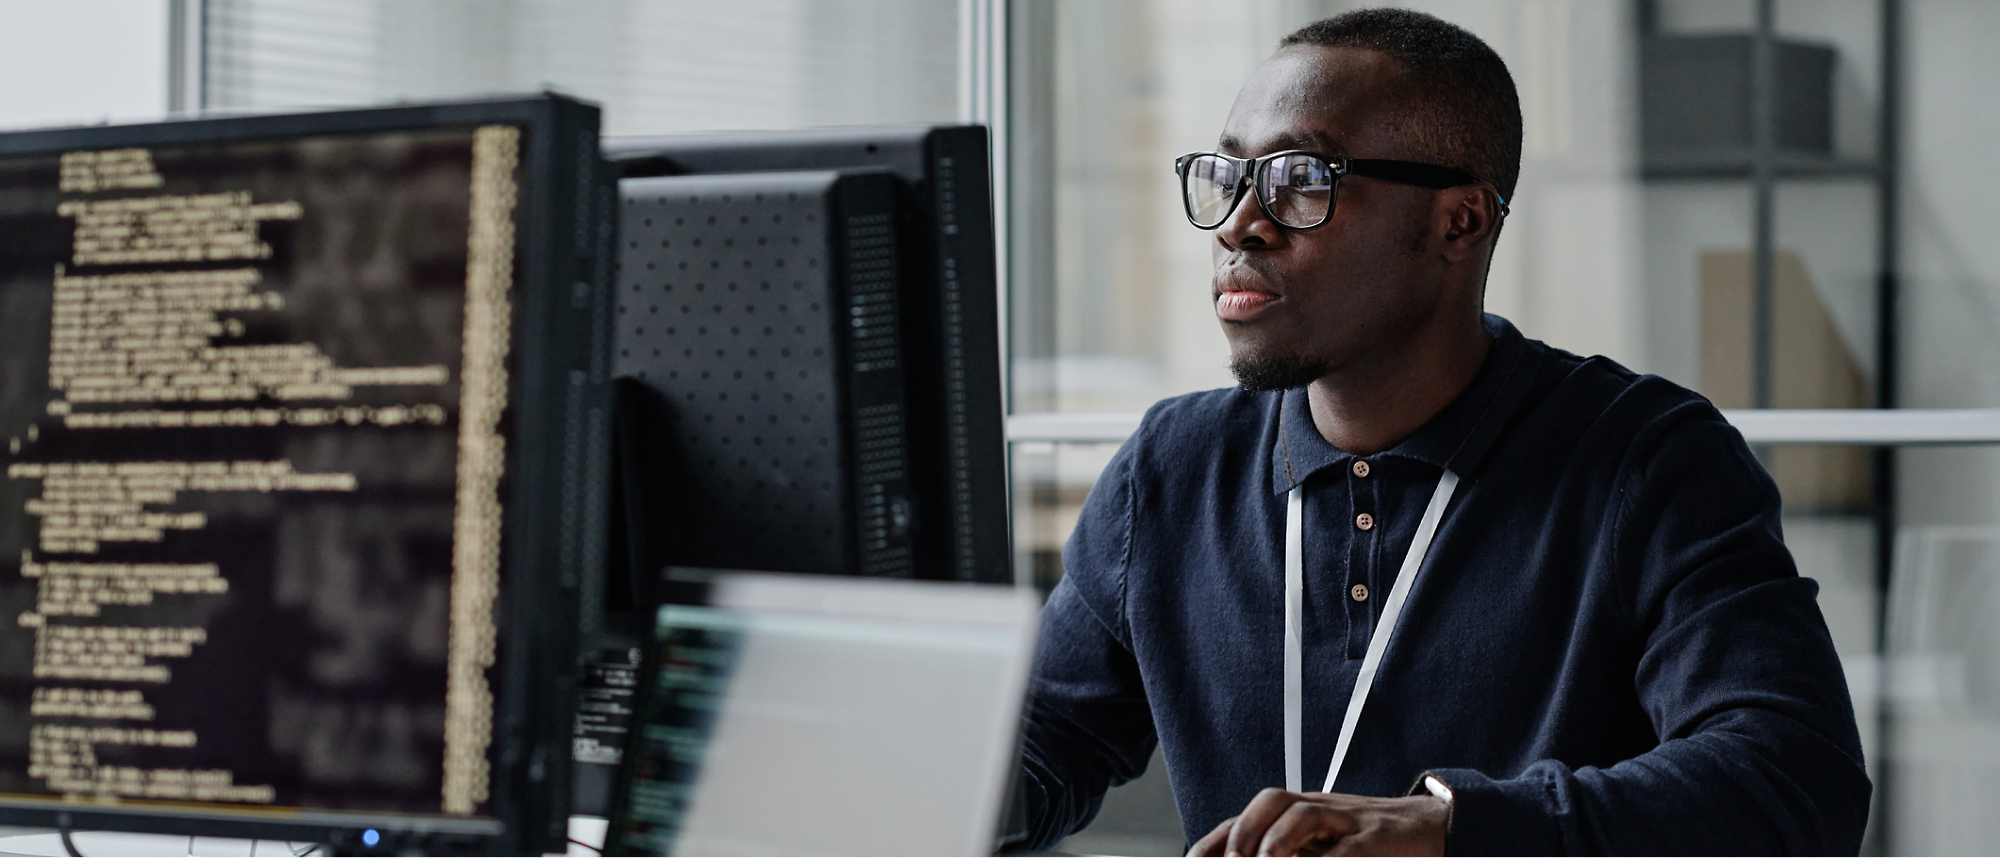 Een man met een bril en een donker shirt werkt op een computer met regels code op het scherm in een kantooromgeving.